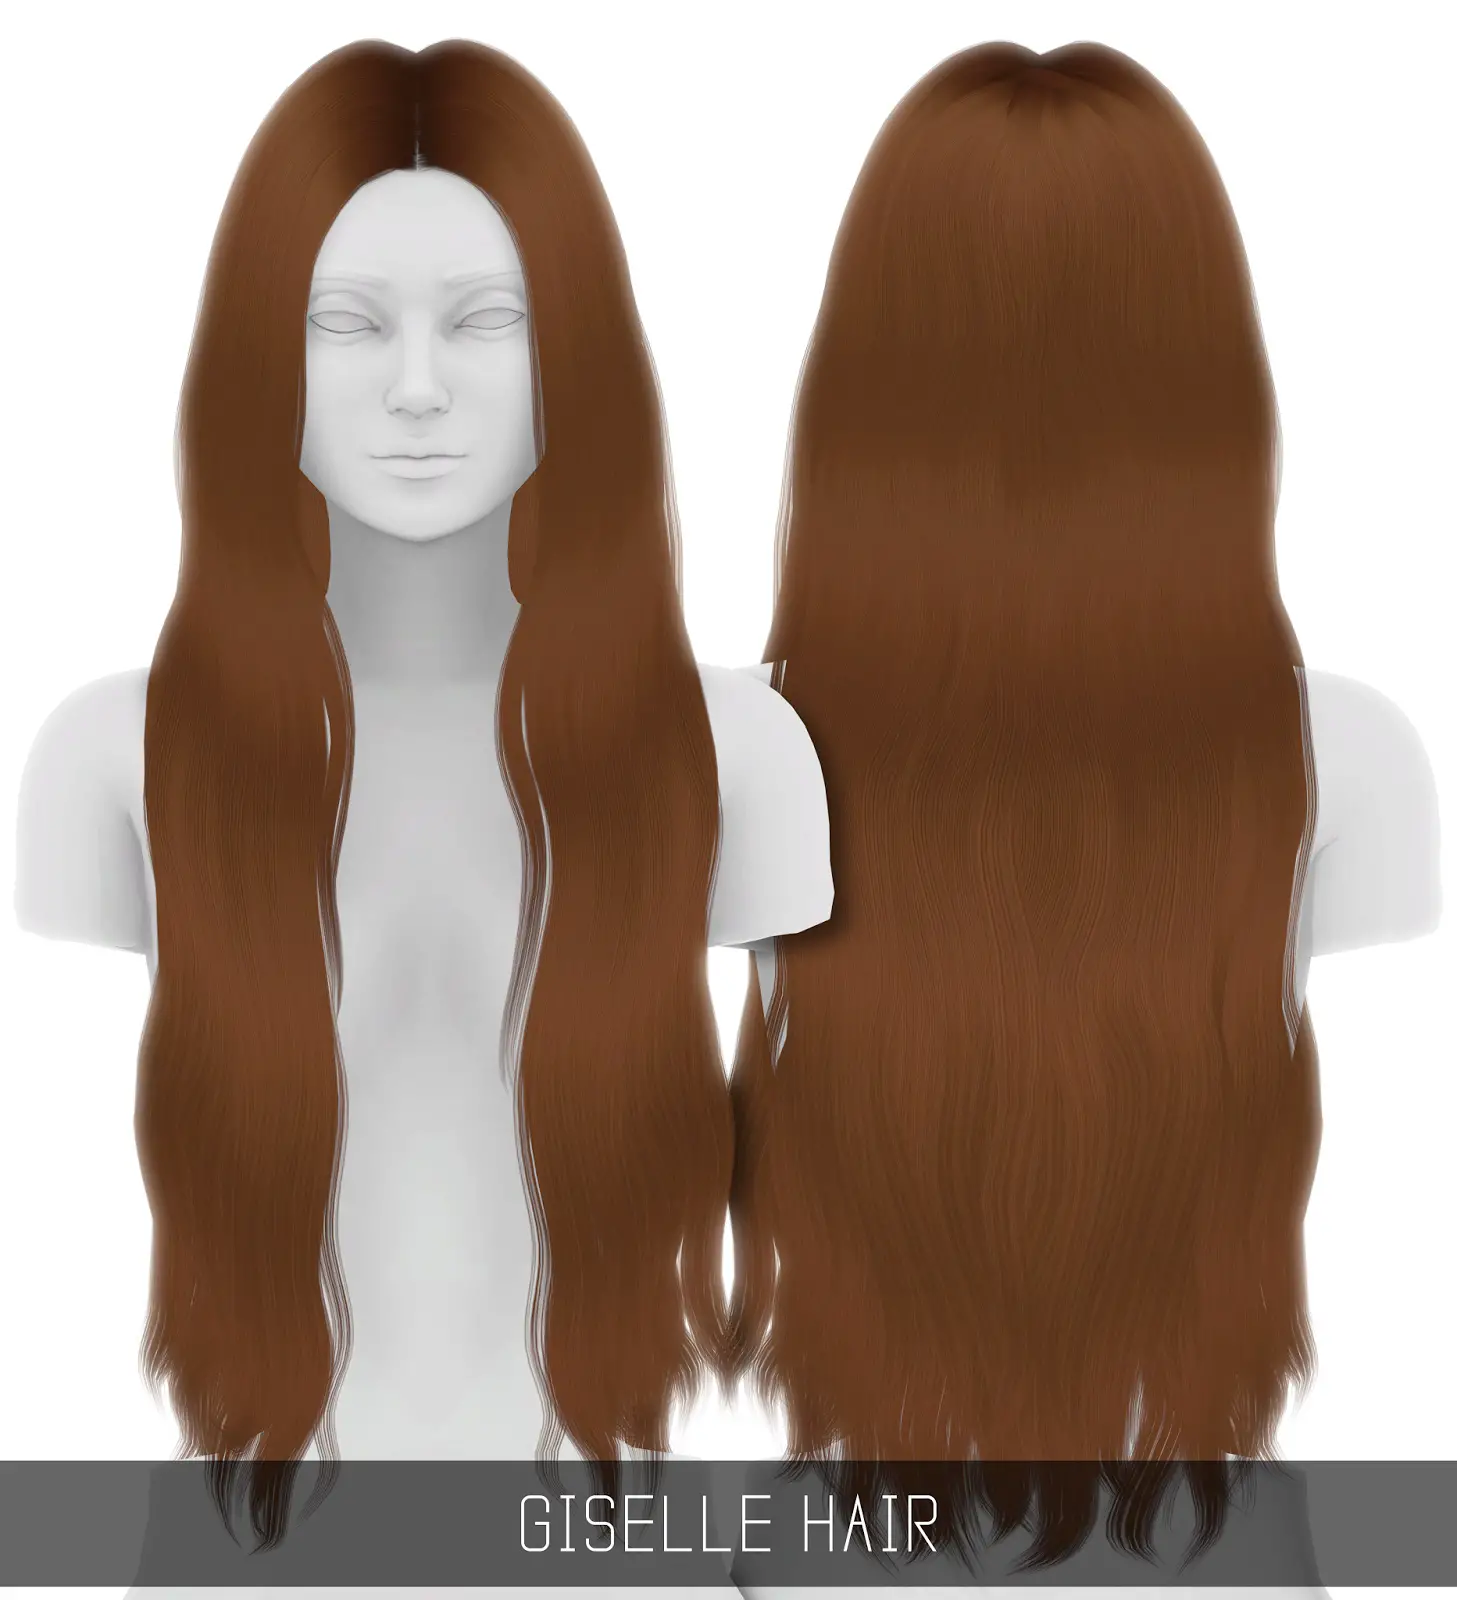 Simpliciaty: Giselle hair ~ Sims 4 Hairs